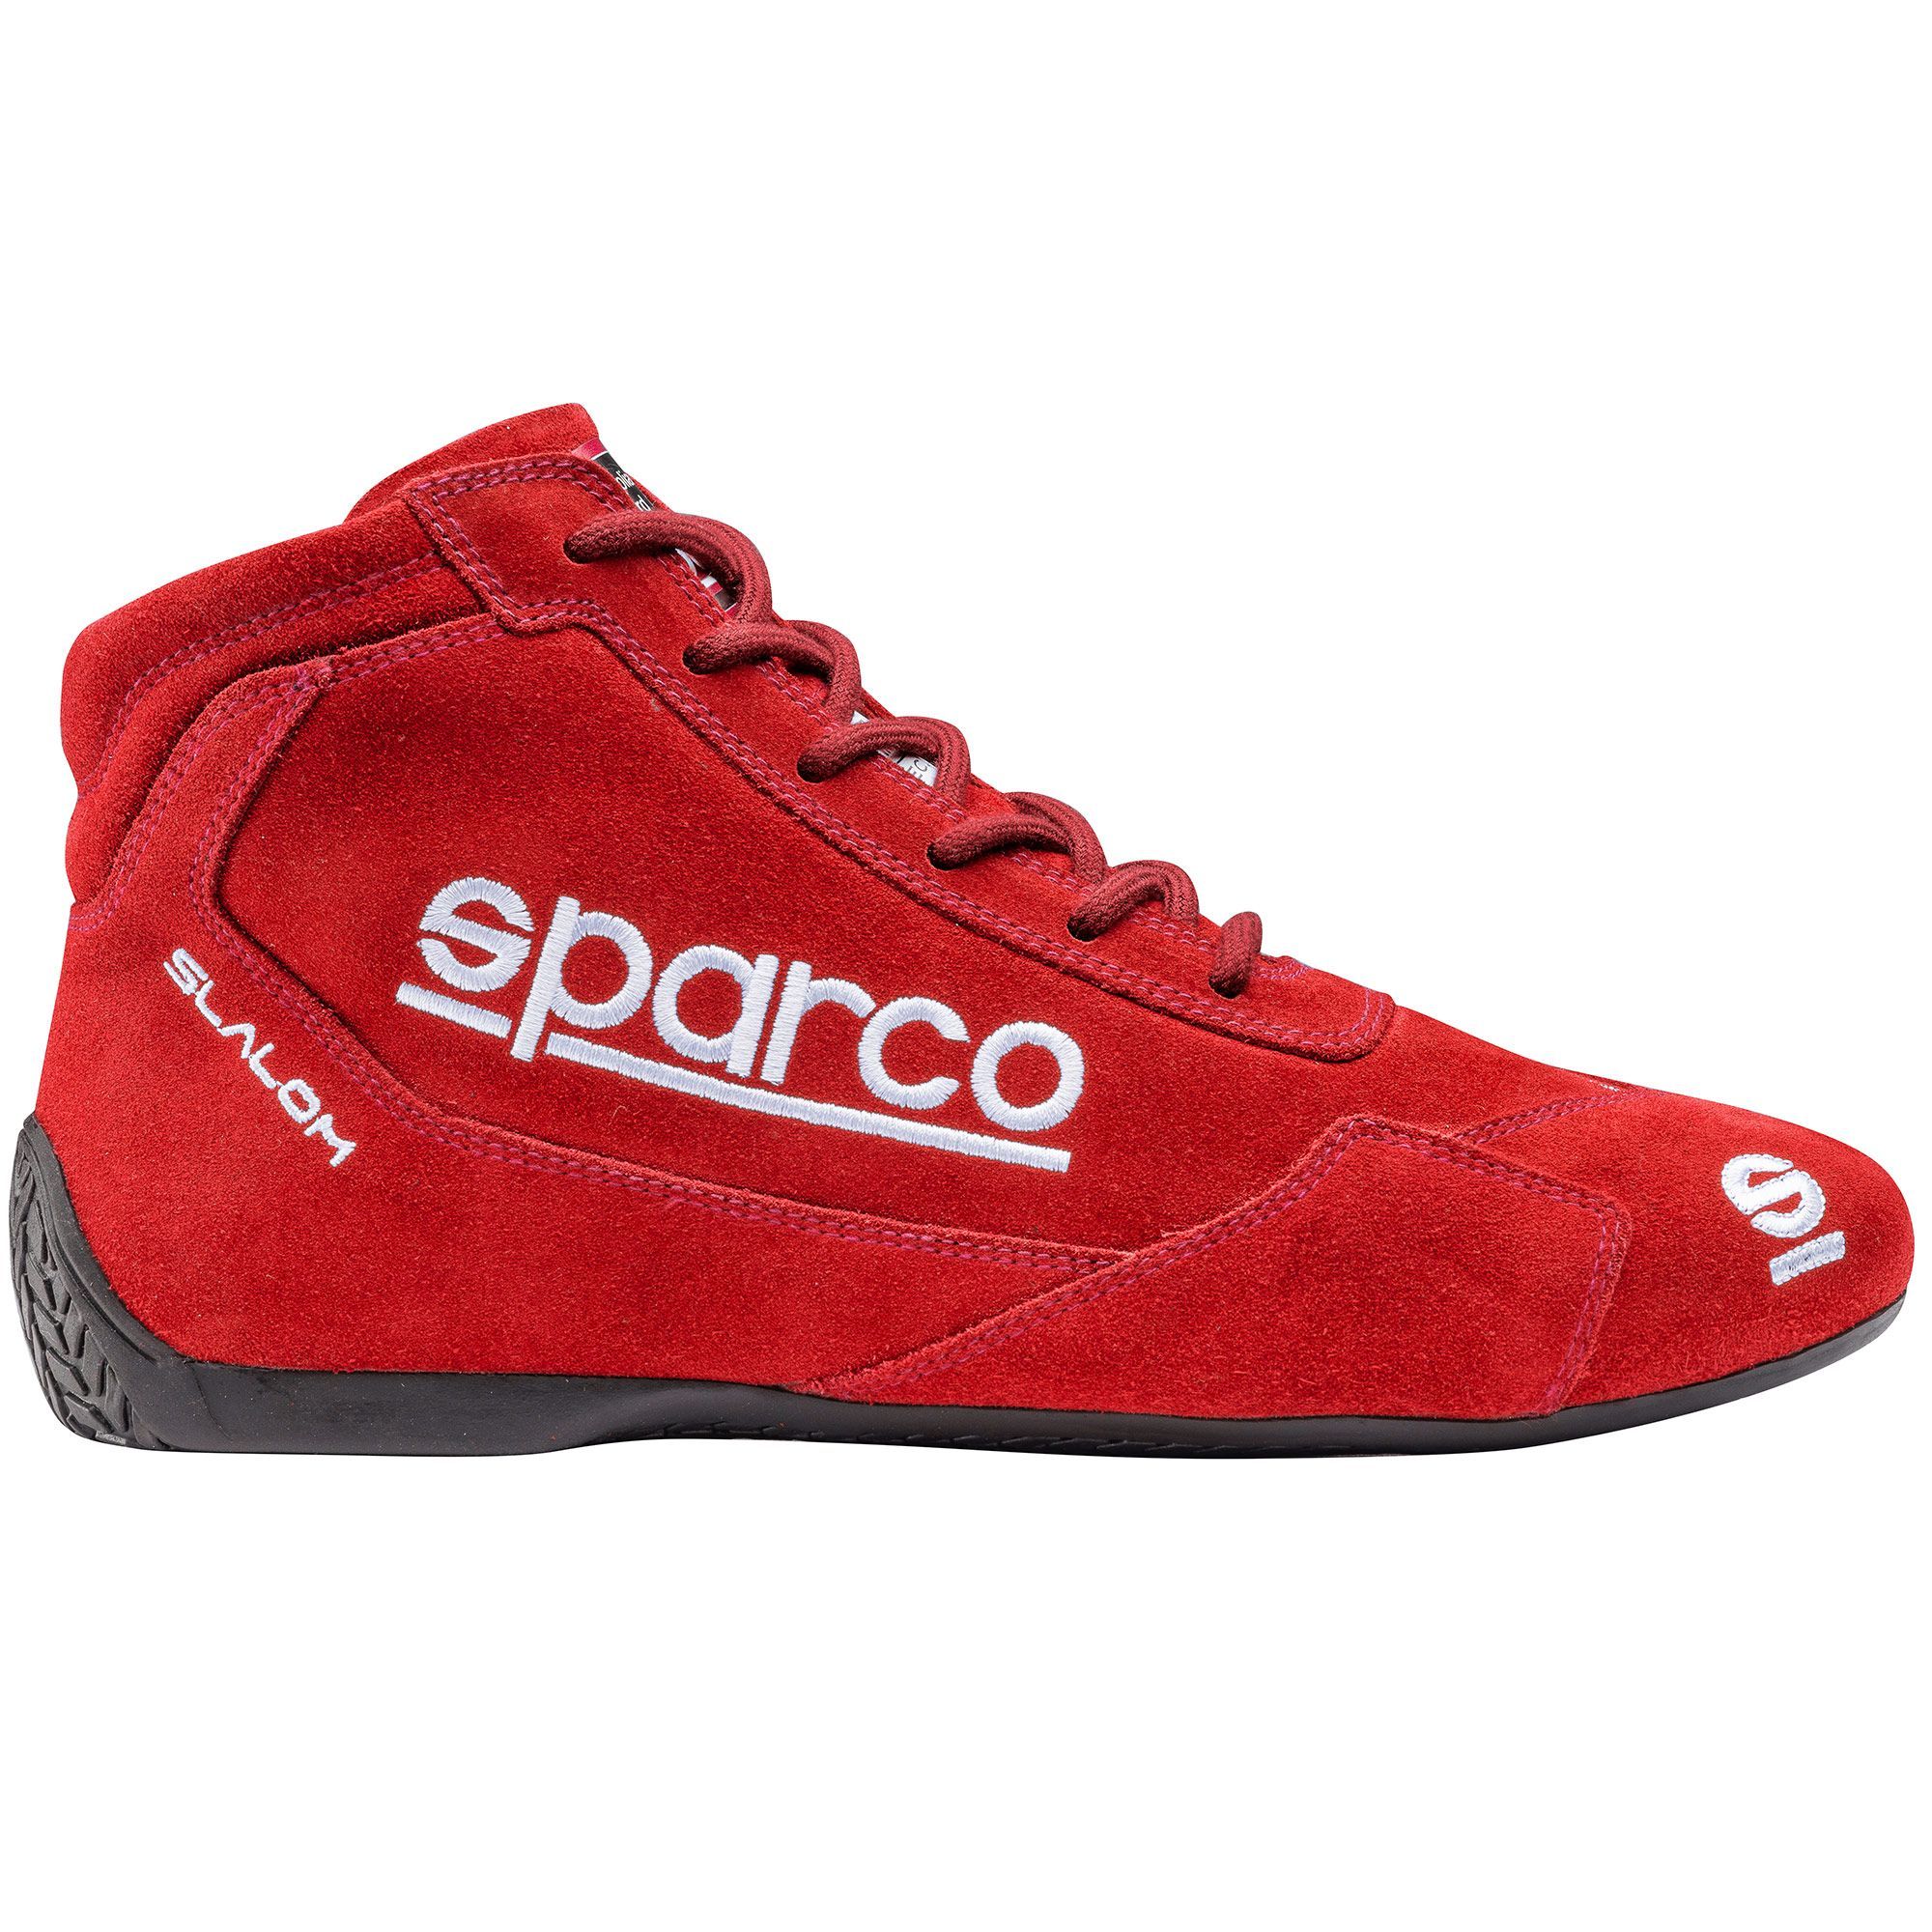 SPARCO RACE SHOES SCHUHE RACE BOOTS RALLY FIA 8856-2000 SLALOM SLx SIZE 39to46 